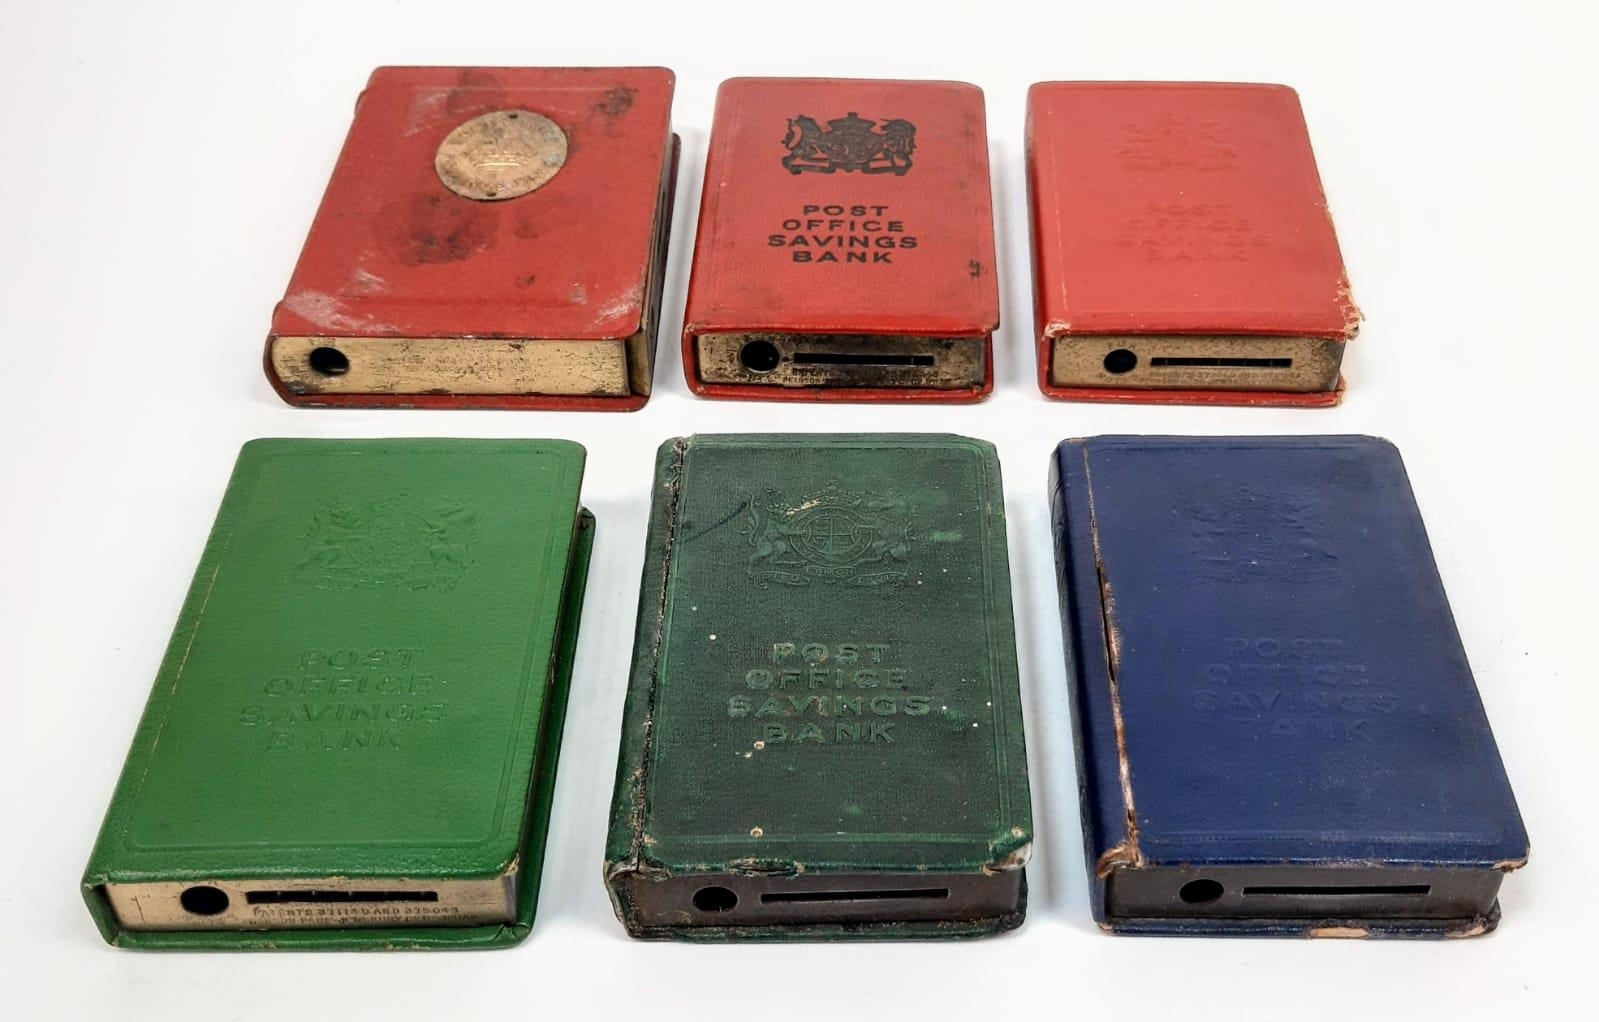 Six Vintage Post Office Metal Piggy Bank Boxes. No keys. 12 x 9cm largest box.